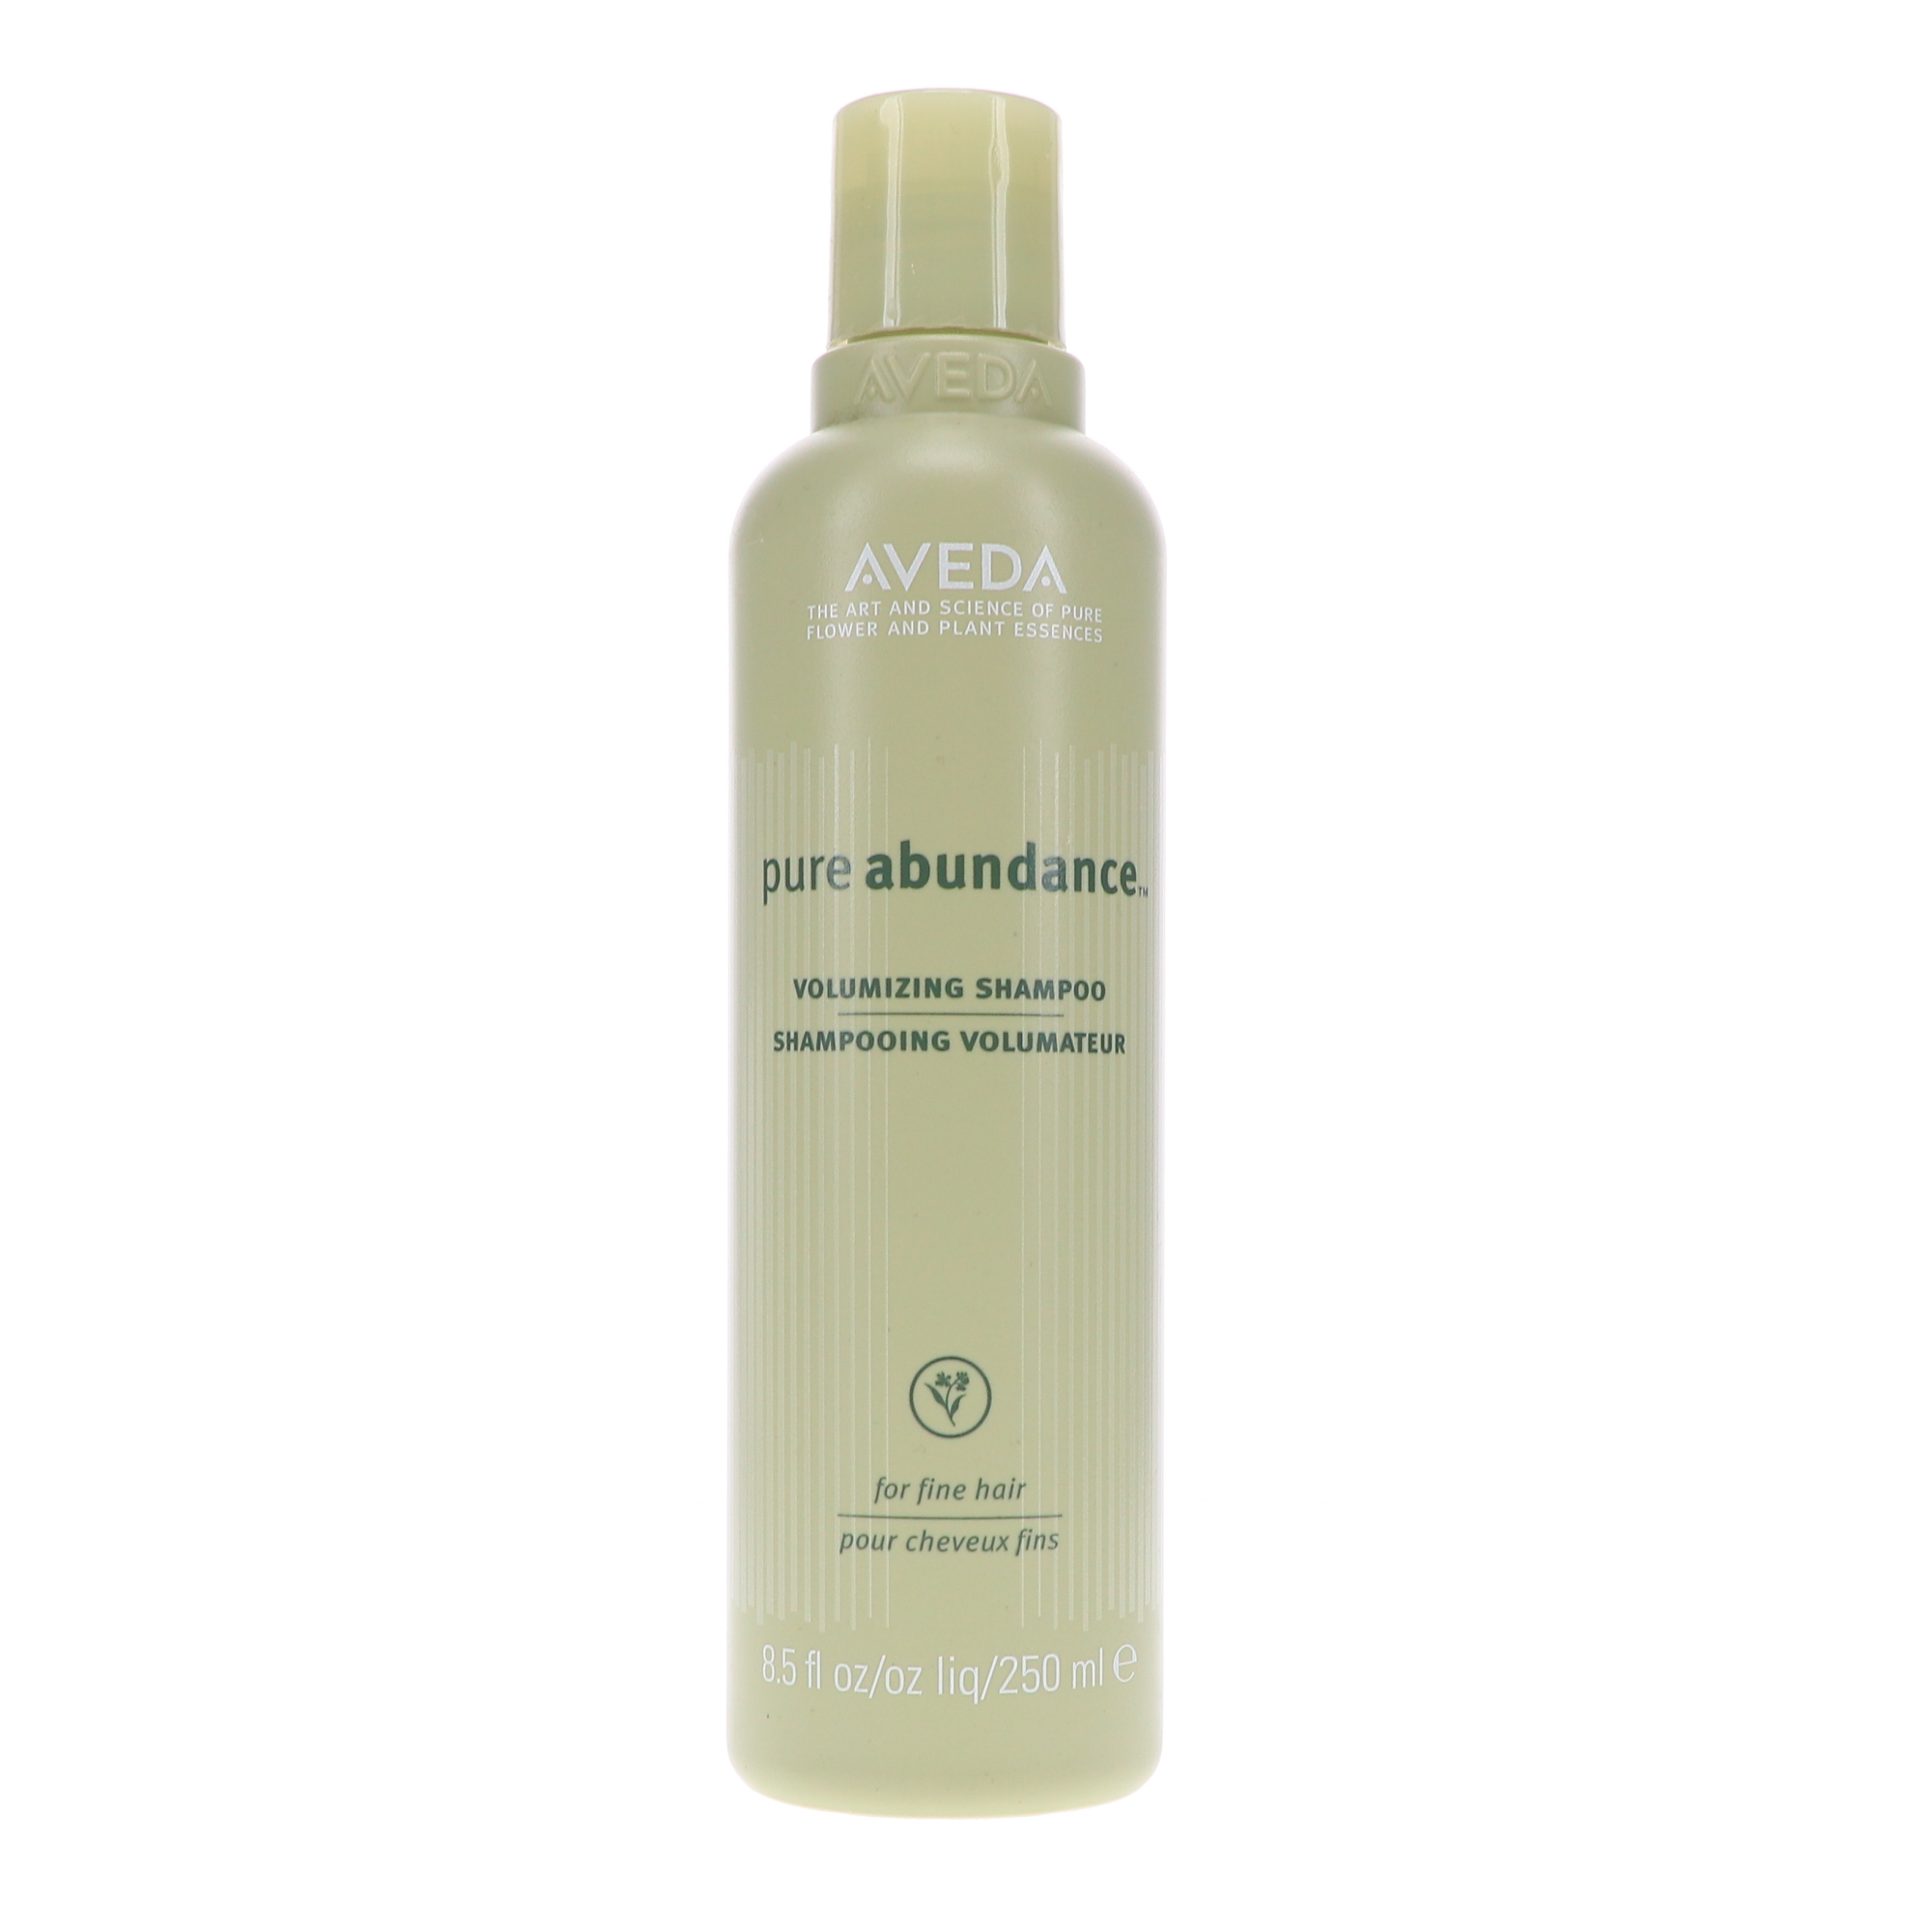 Aveda Pure Abundance Volumizing Shampoo 8.5 oz - image 1 of 8